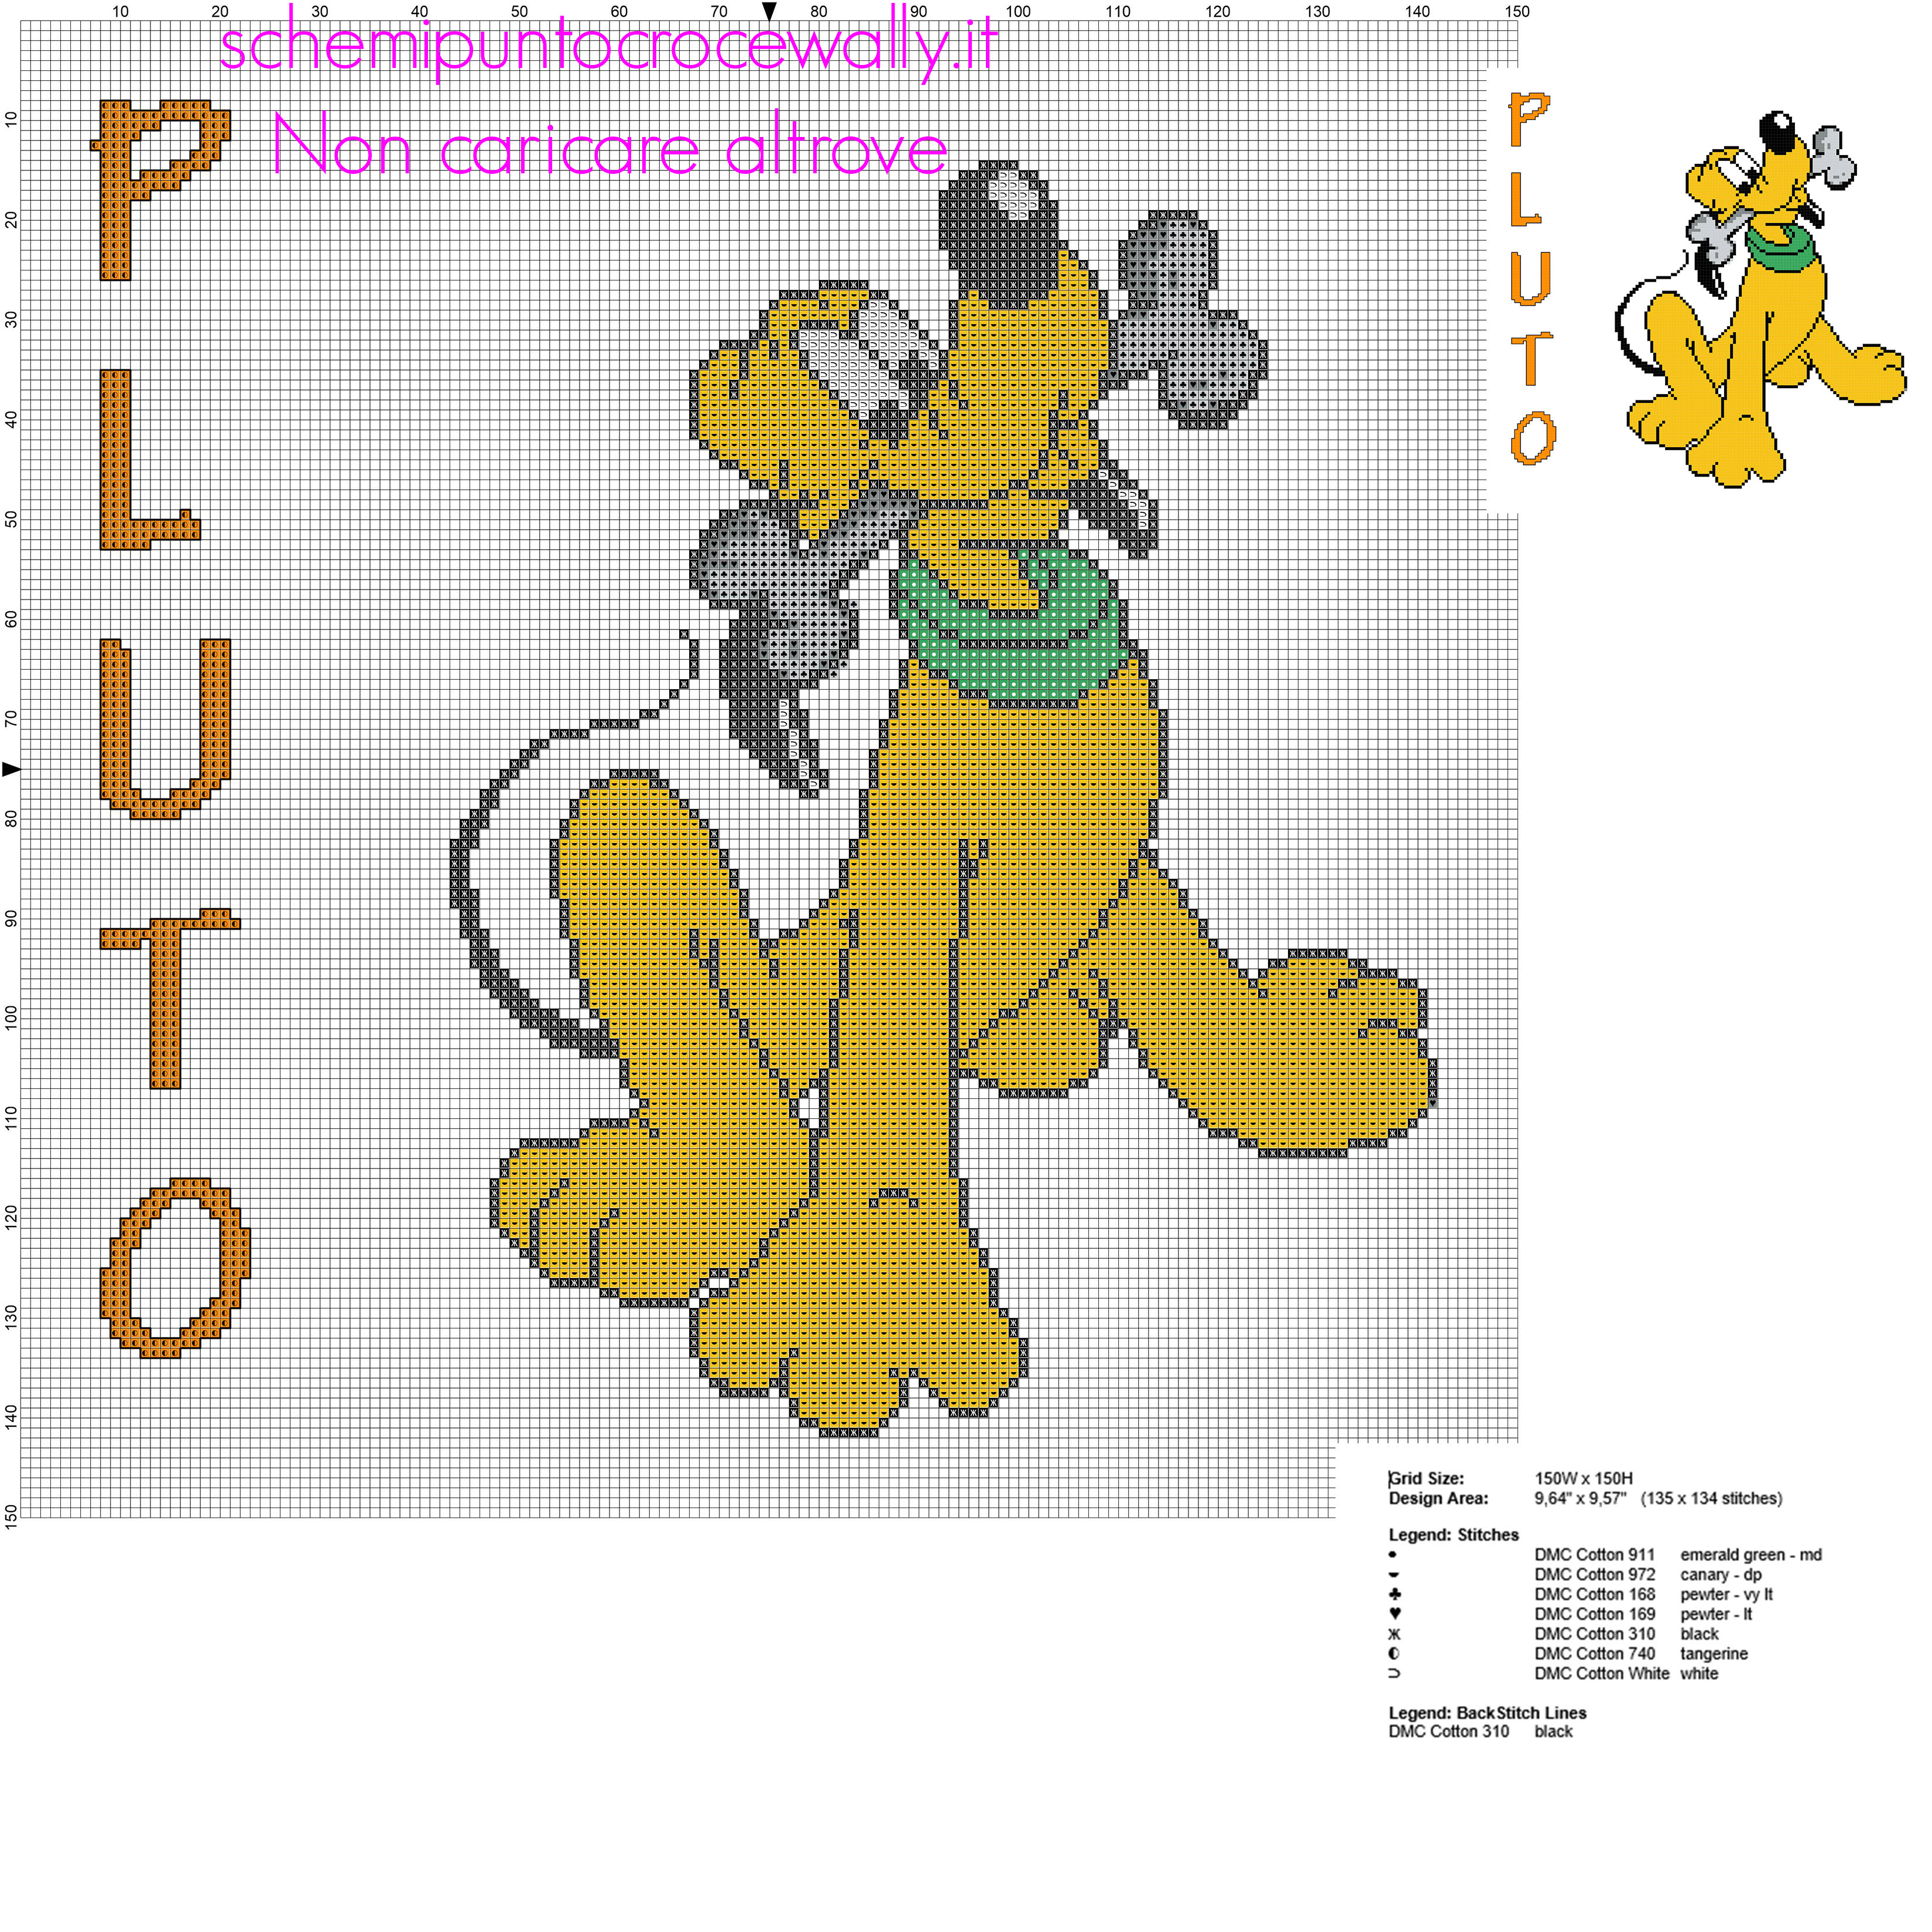 Pluto simpatico personaggio Disney grande schema punto croce idea cuscino bimbo ragazzo